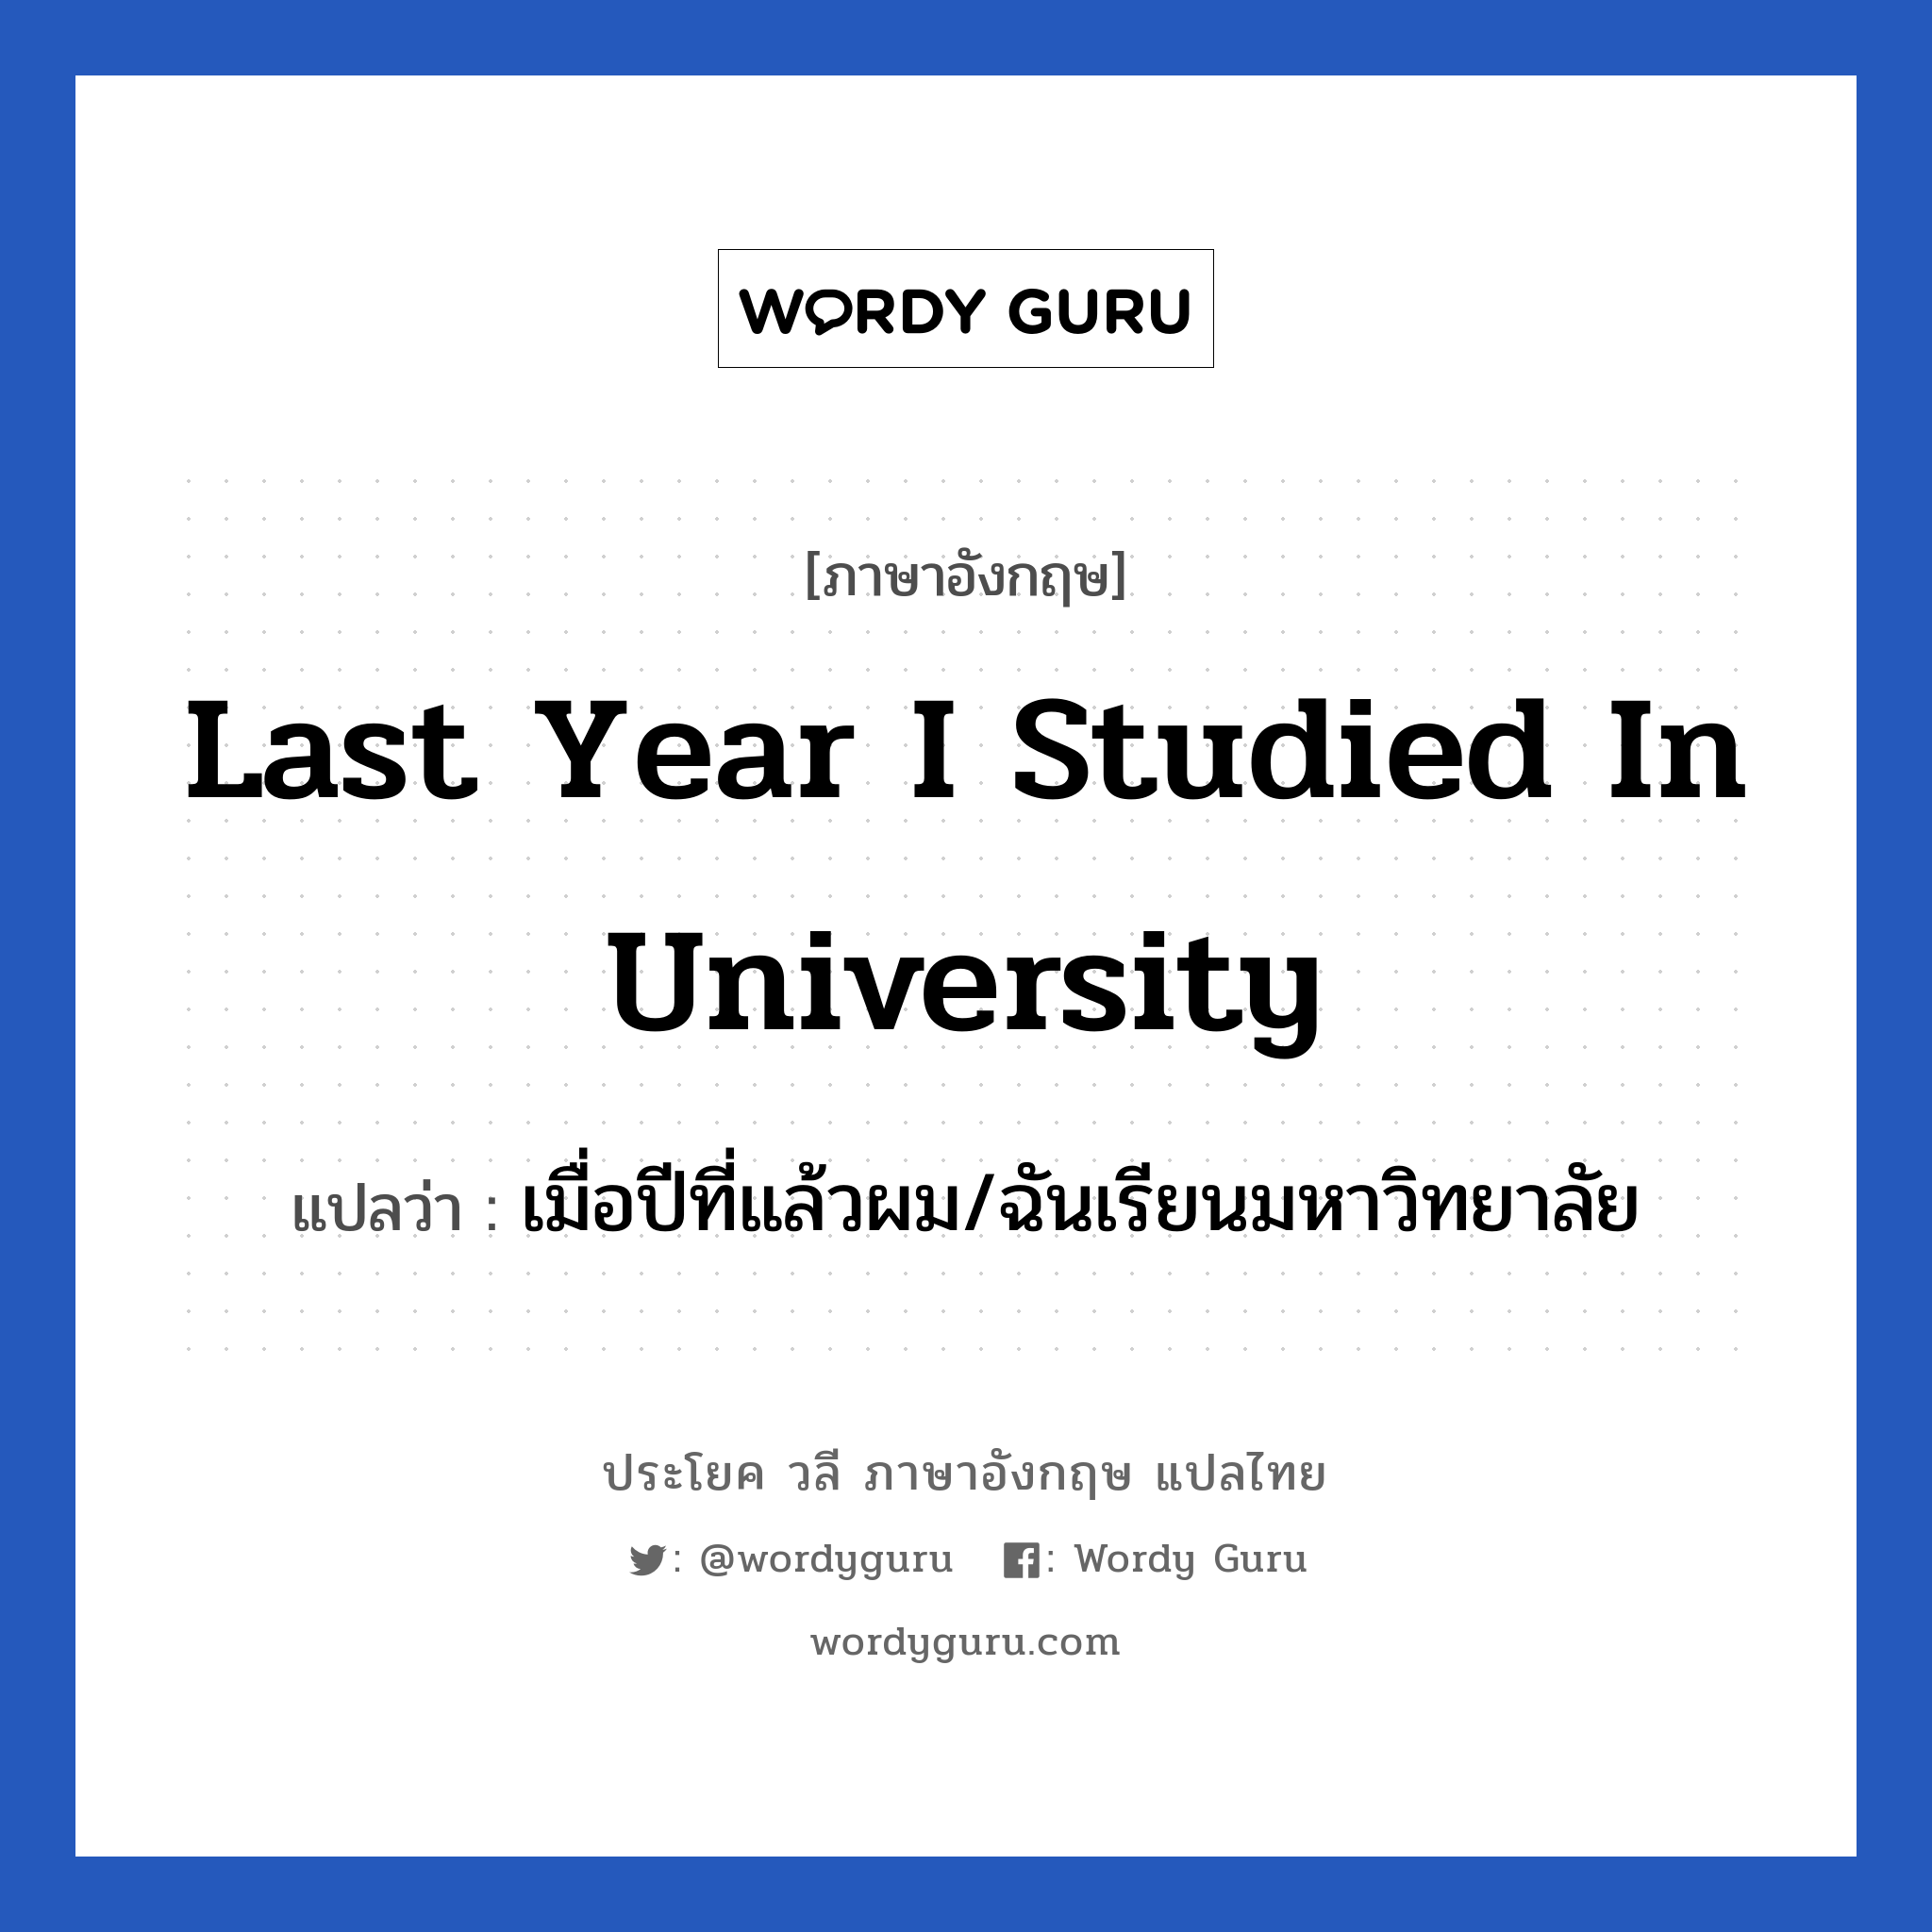 เมื่อปีที่แล้วผม/ฉันเรียนมหาวิทยาลัย ภาษาอังกฤษ?, วลีภาษาอังกฤษ เมื่อปีที่แล้วผม/ฉันเรียนมหาวิทยาลัย แปลว่า Last year I studied in university